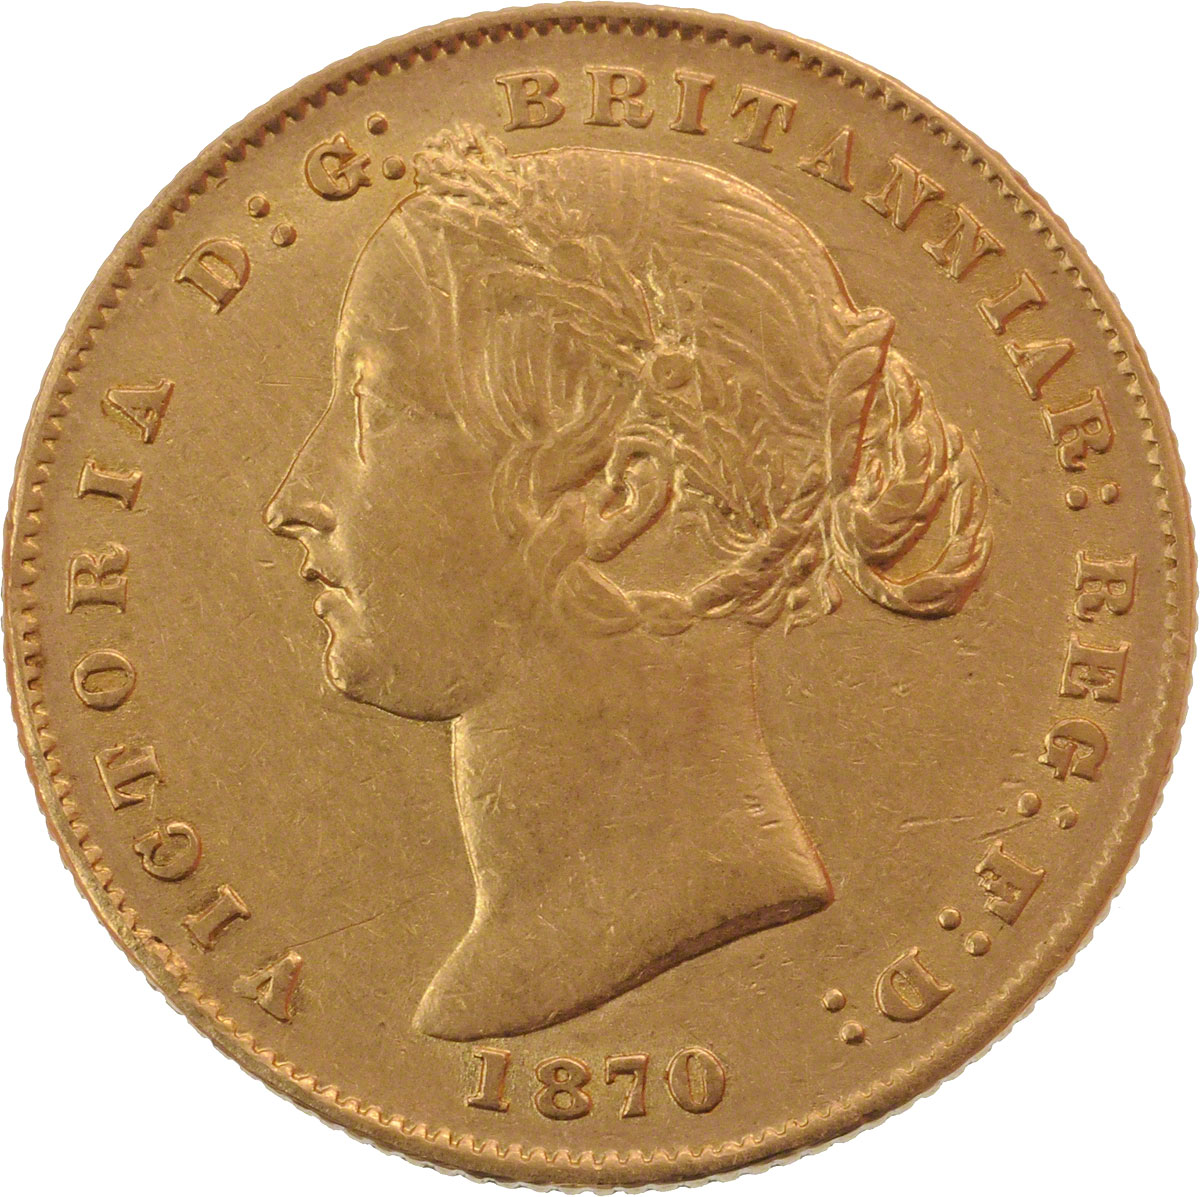 1870 Βικτώρια (Νομισματοκοπείο Σίδνεϊ)